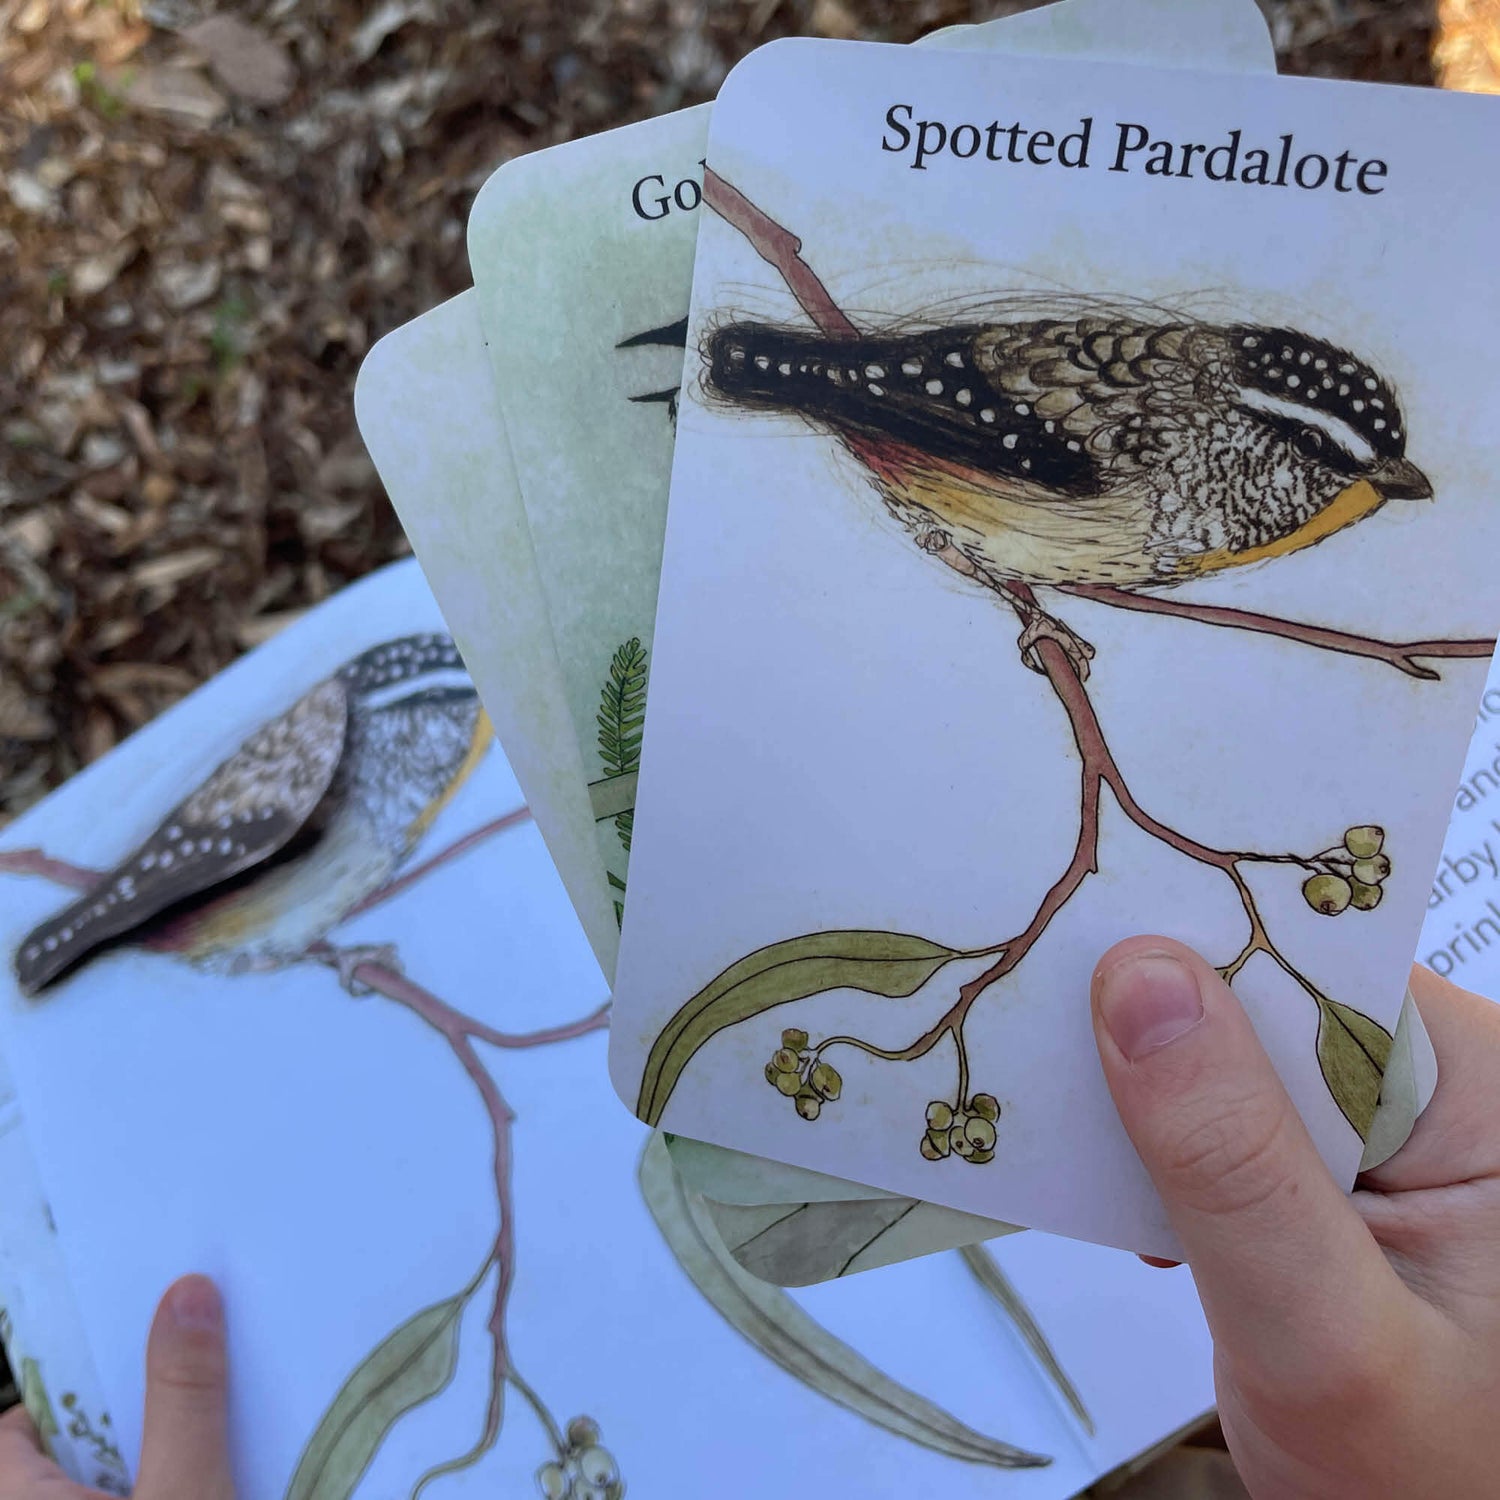 The Bush Birds Book + Card Game